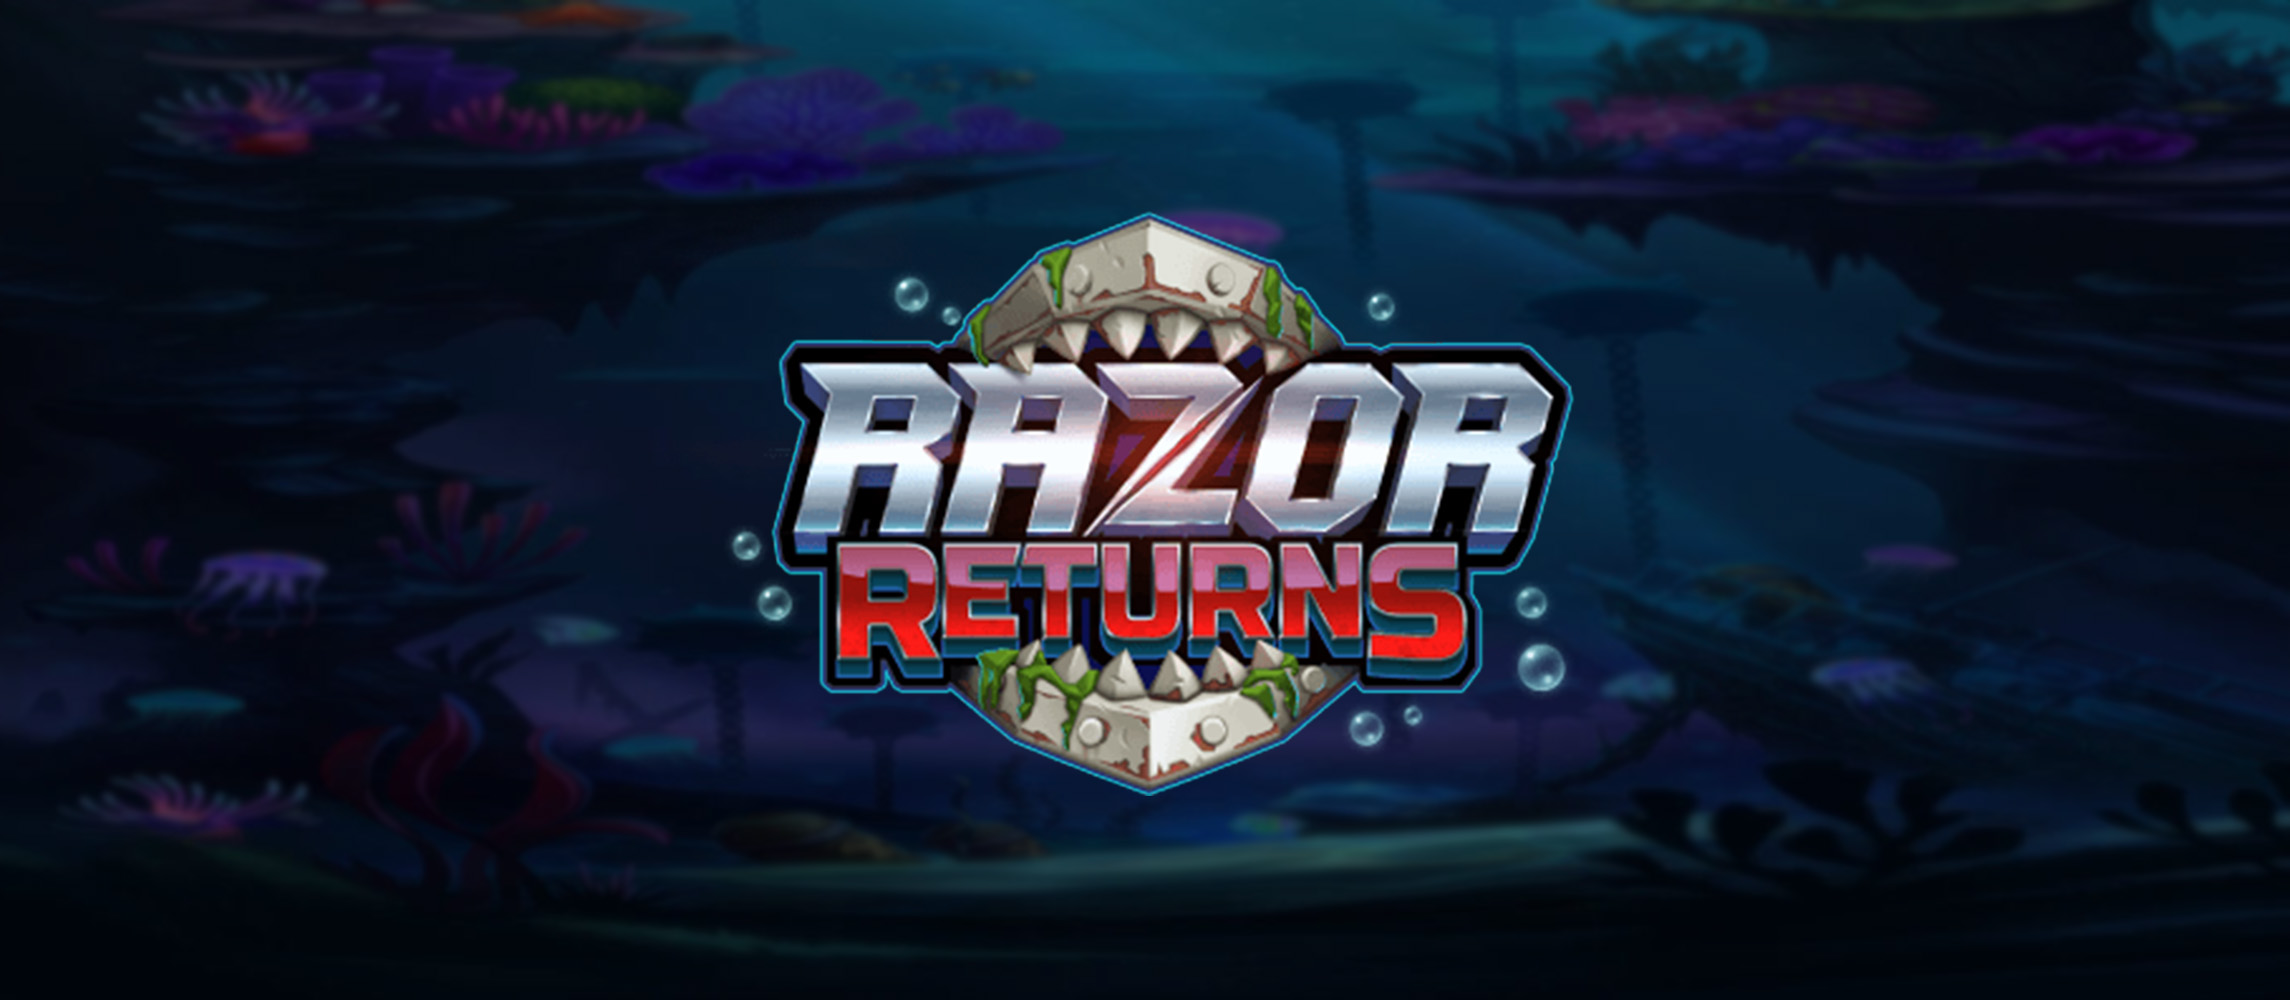 Razor Returns Slot Game